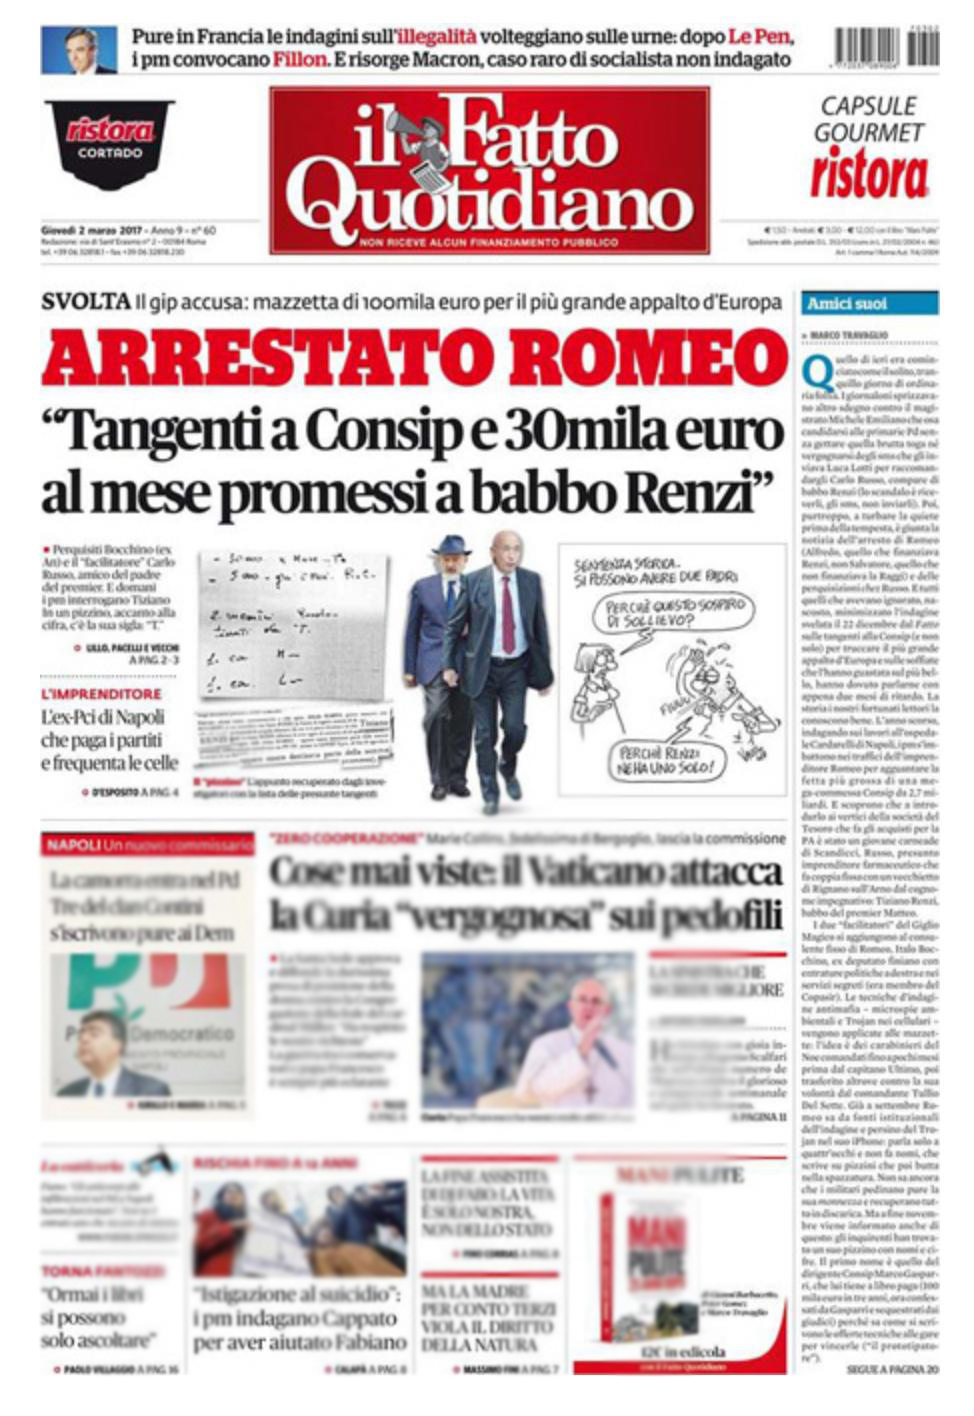 Così i giornali hanno fucilato Alfredo Romeo: cronisti o sicari?